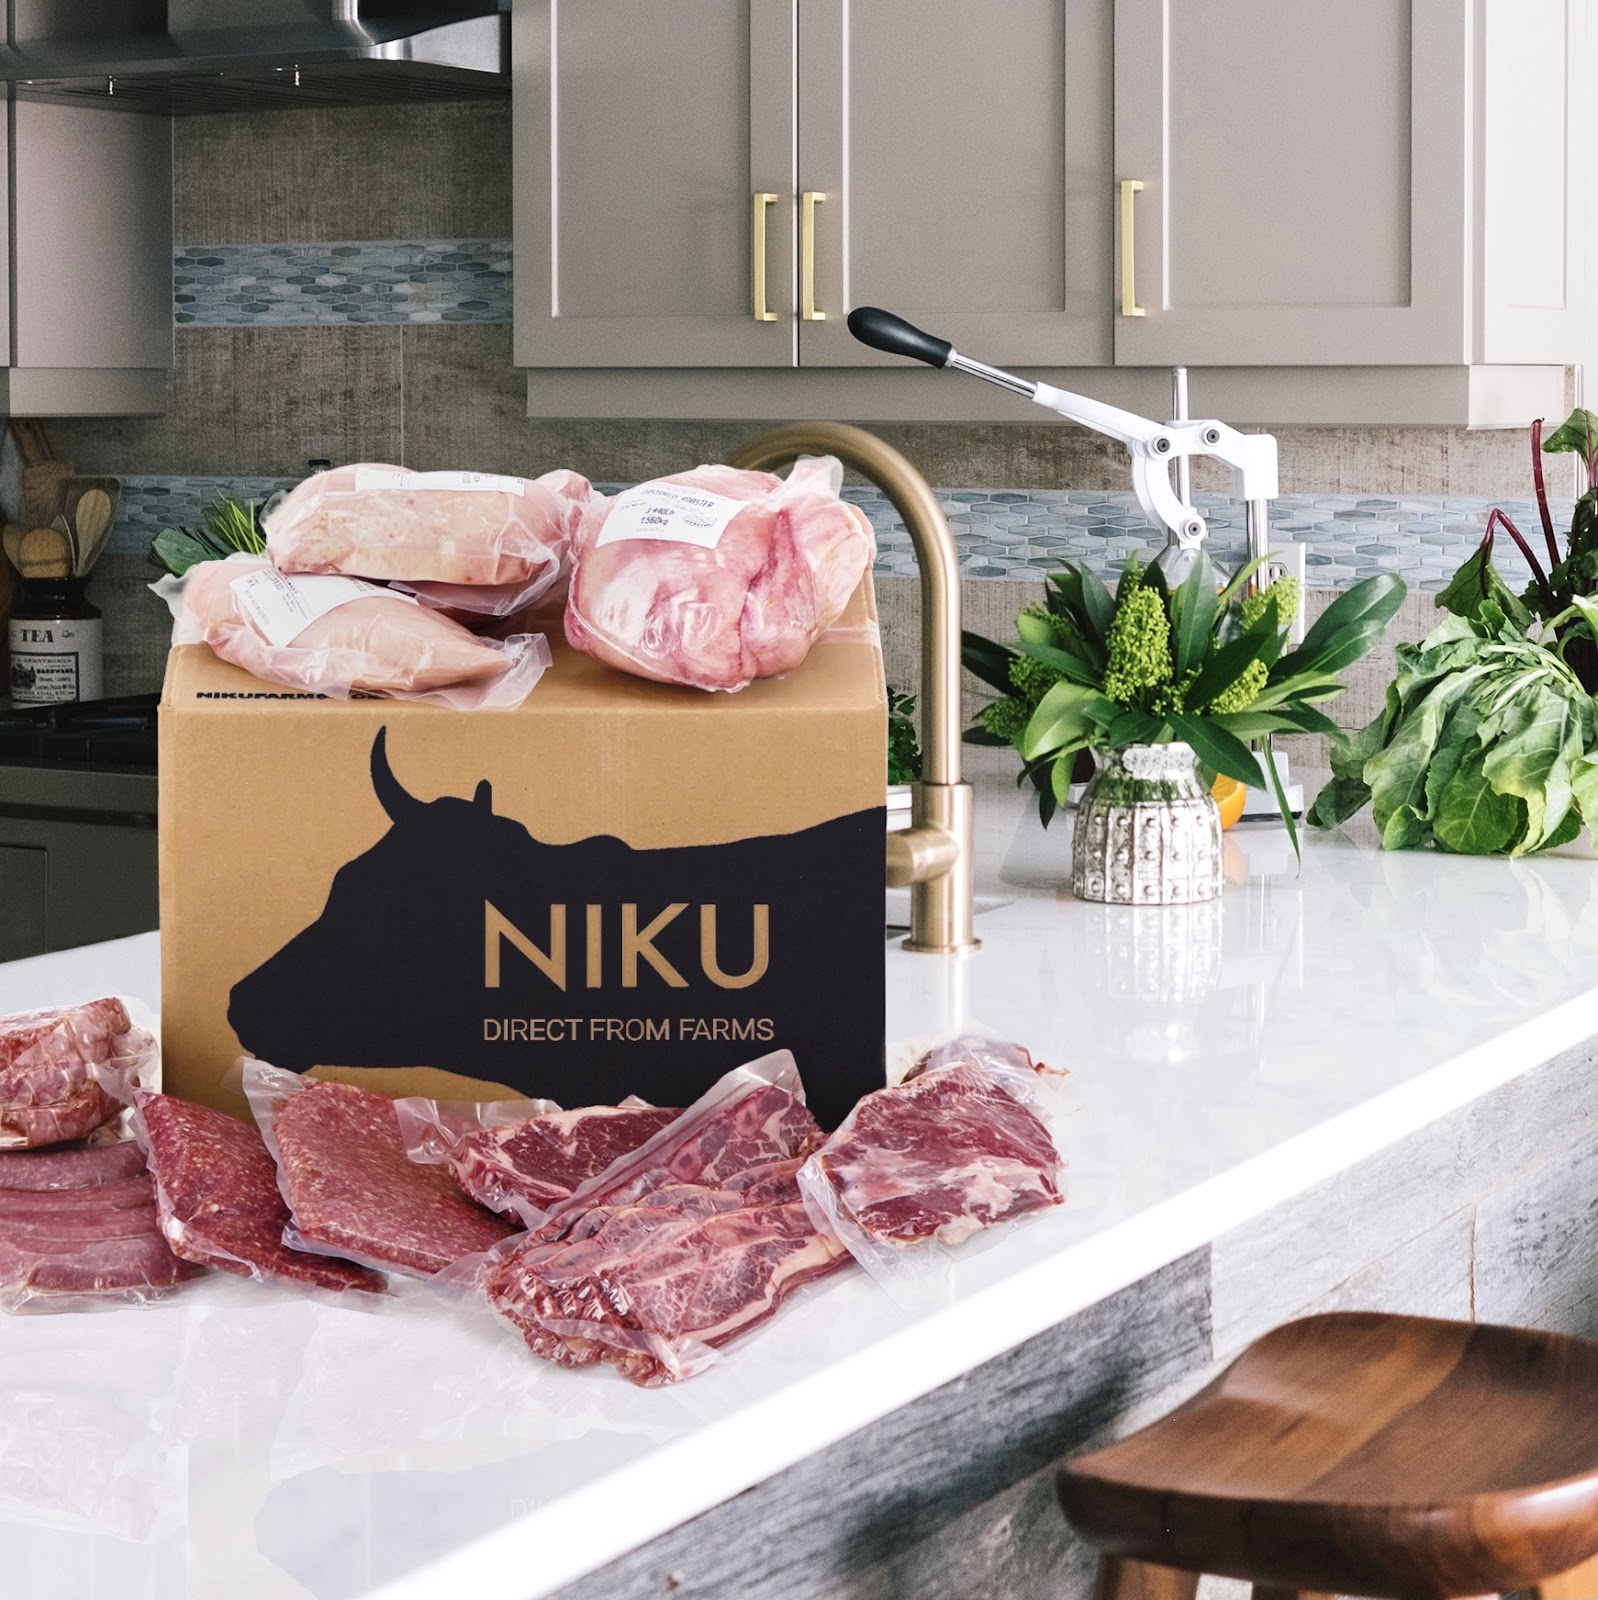 A NIKU Farms box on a white kitchen counter.